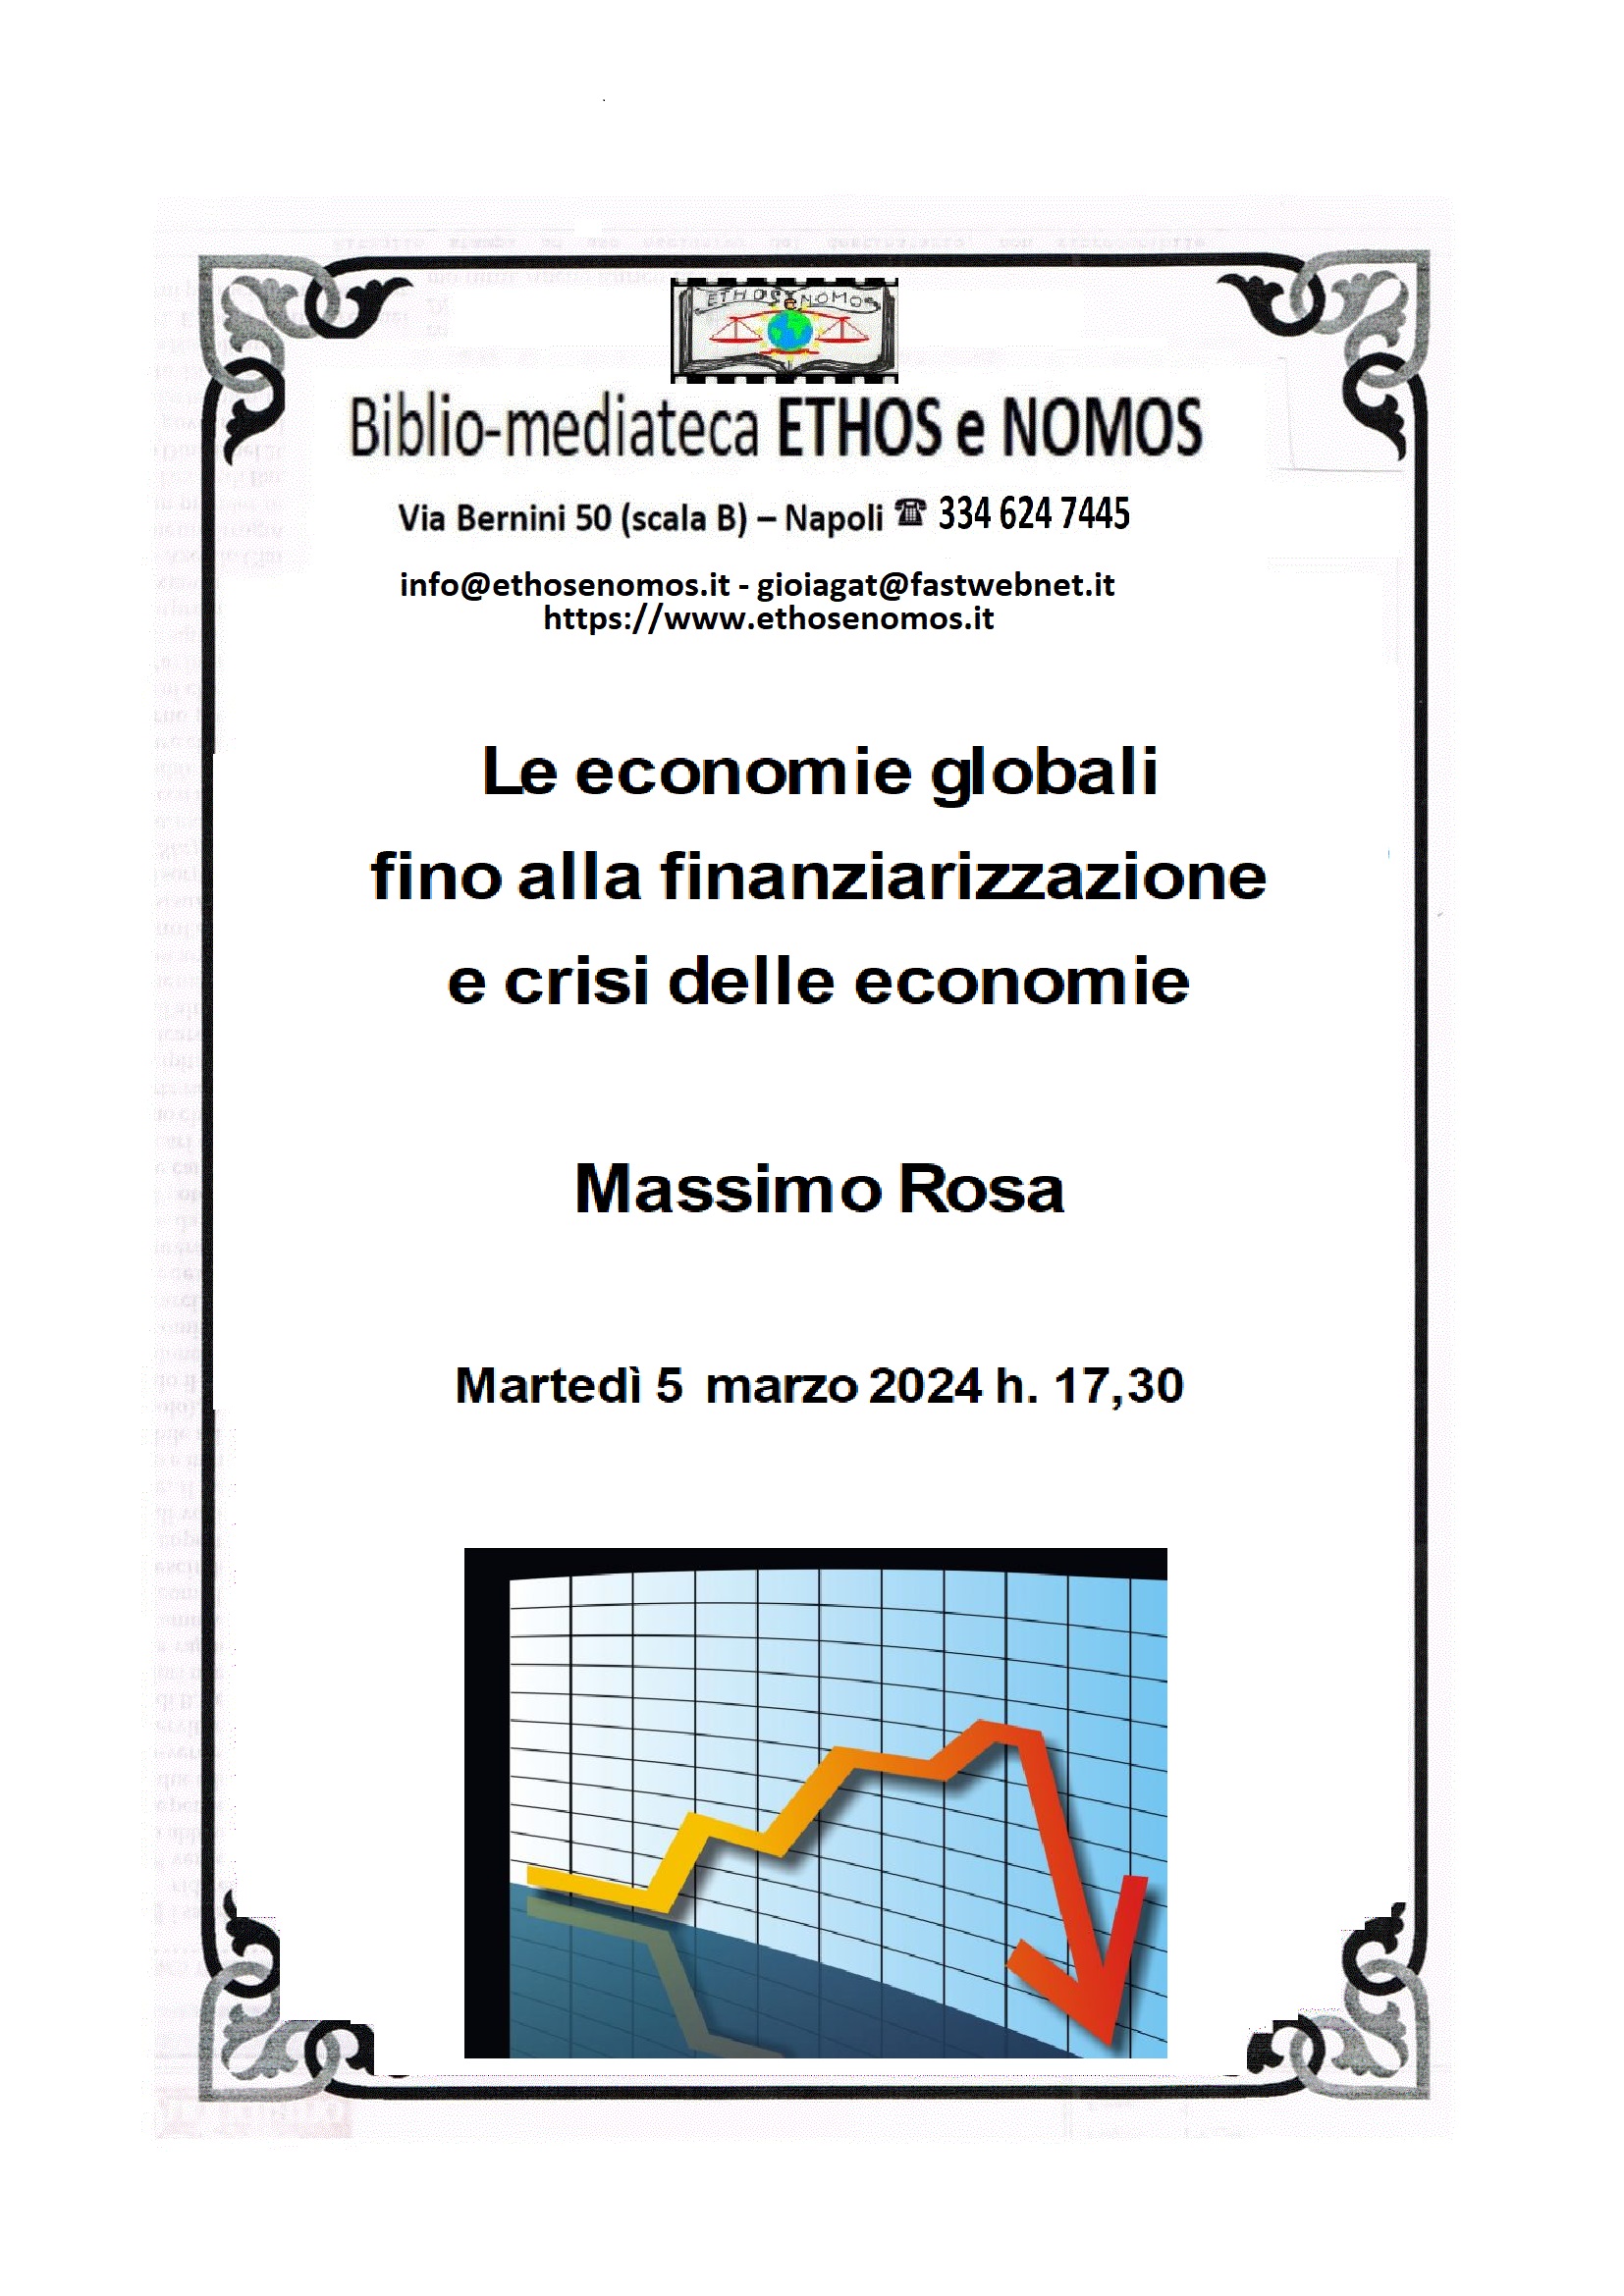 Massimo Rosa - Le economie globali fino alla finanziarizzazione e crisi delle economie